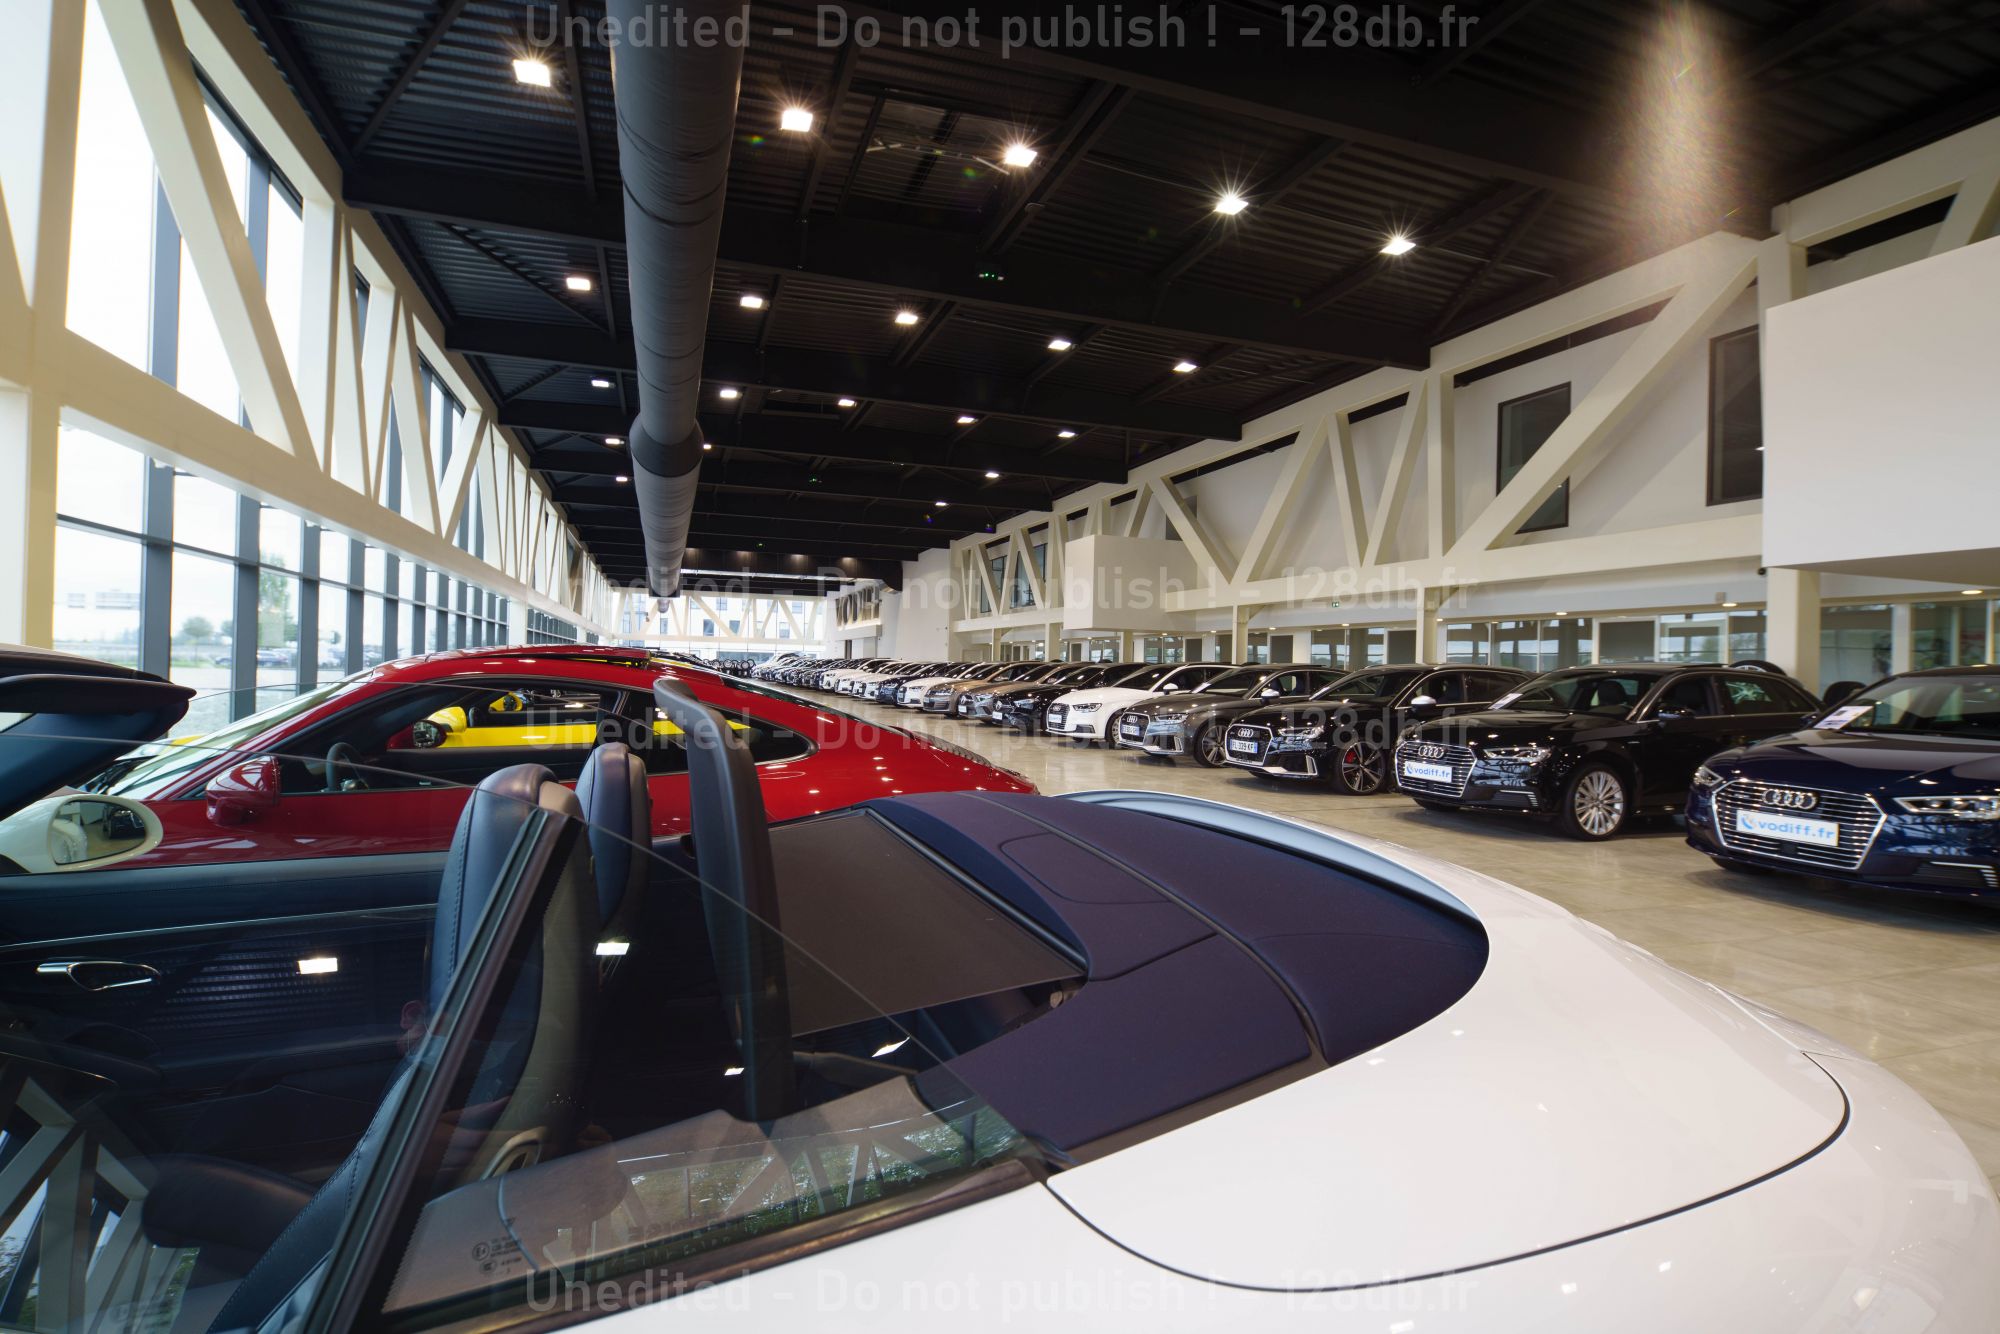 Vodiff s’est doté d’un département dédié à la marque Porsche avec une équipe de spécialistes, des équipements spécifiques.© Bartosch Salmanski - 128db.fr - Architecte : Jacques Molho